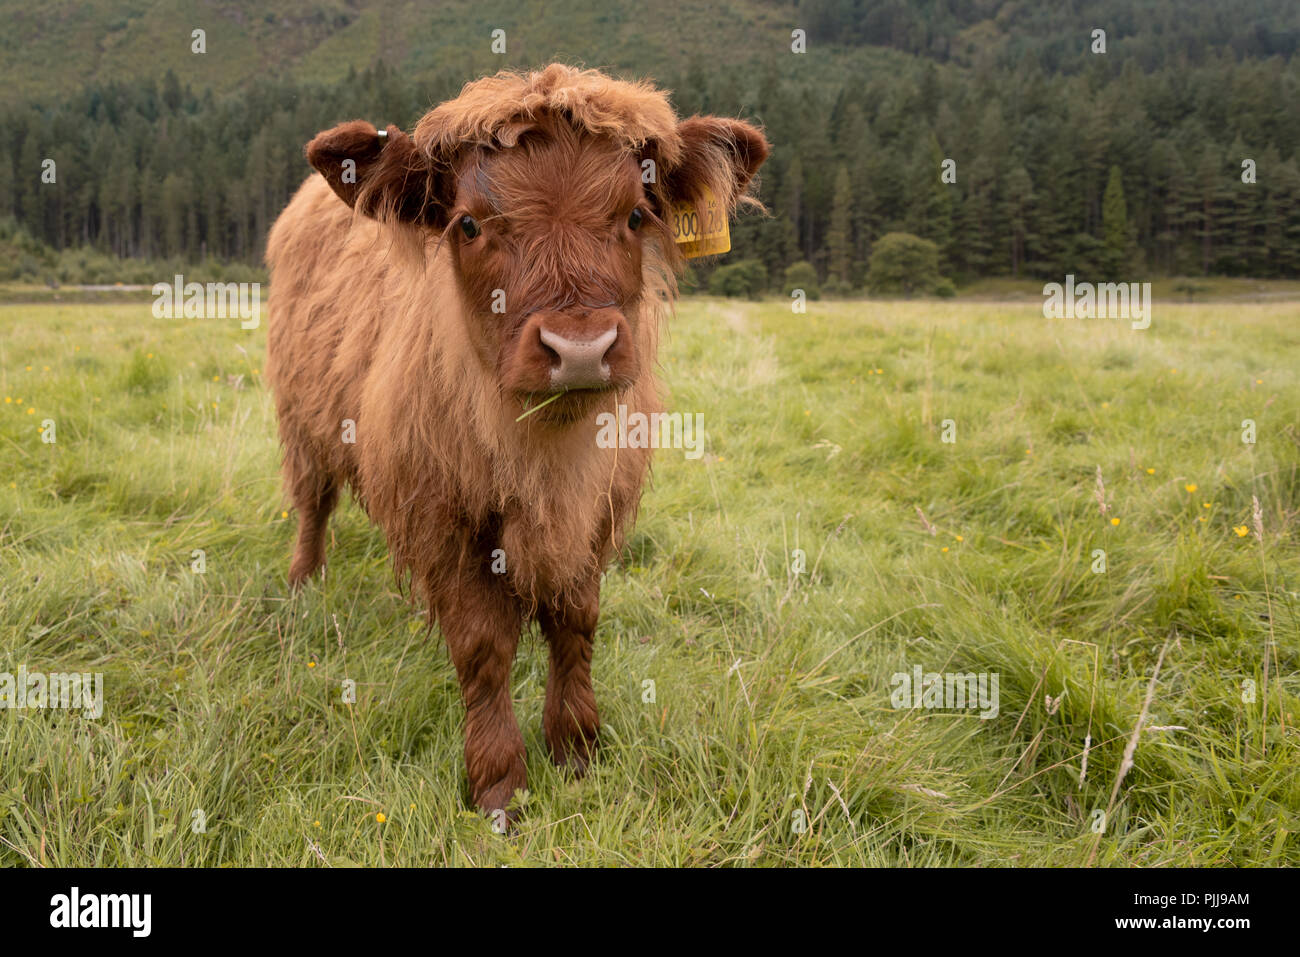 Long manteau écossais Highland cattle dans Fort William près de Ben Nevis, Ecosse, Royaume-Uni Banque D'Images